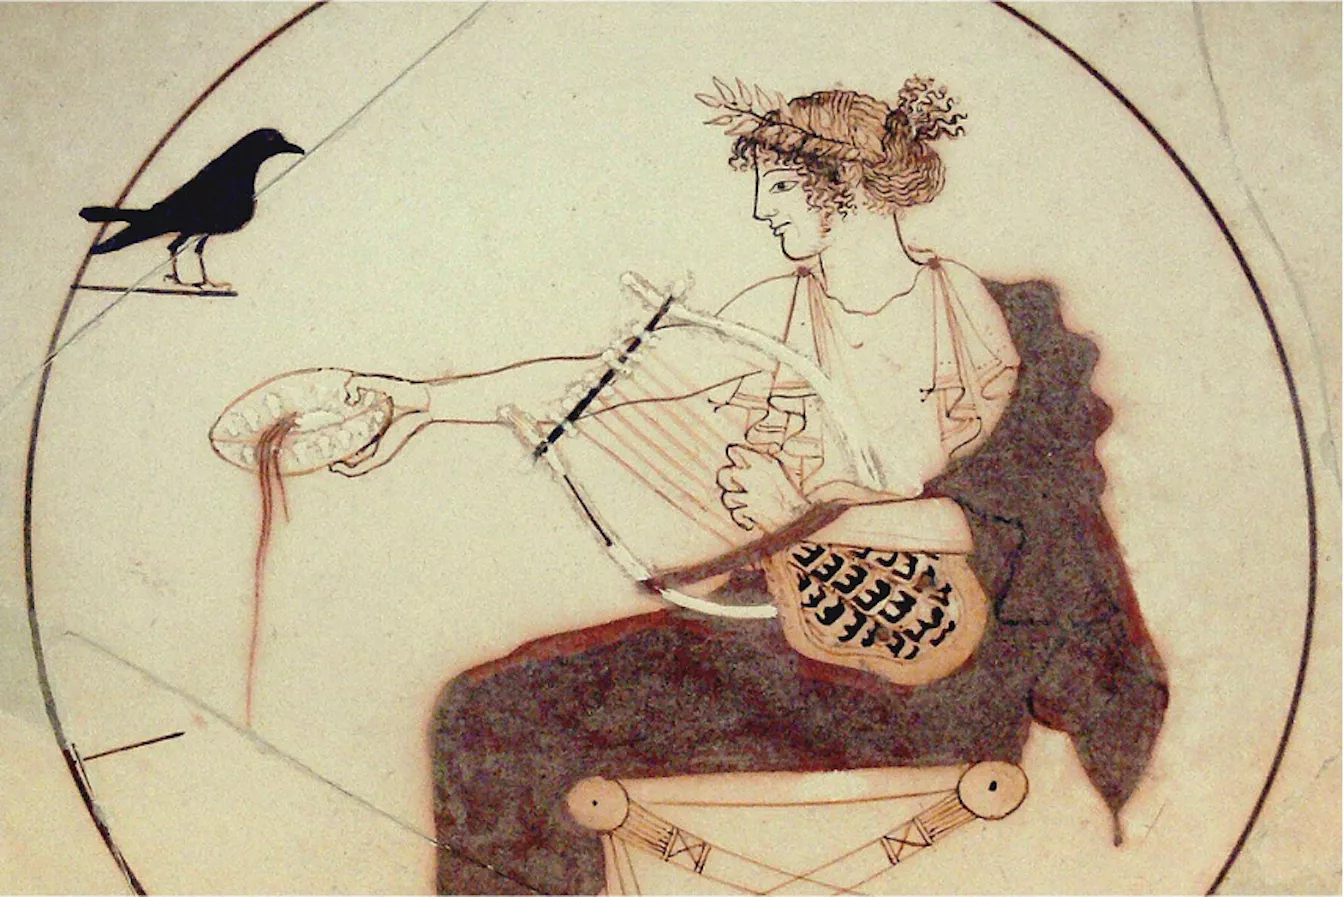 La música, l’art de les muses segons els clàssics, tenia un paper central en la societat de l’antiga Grècia